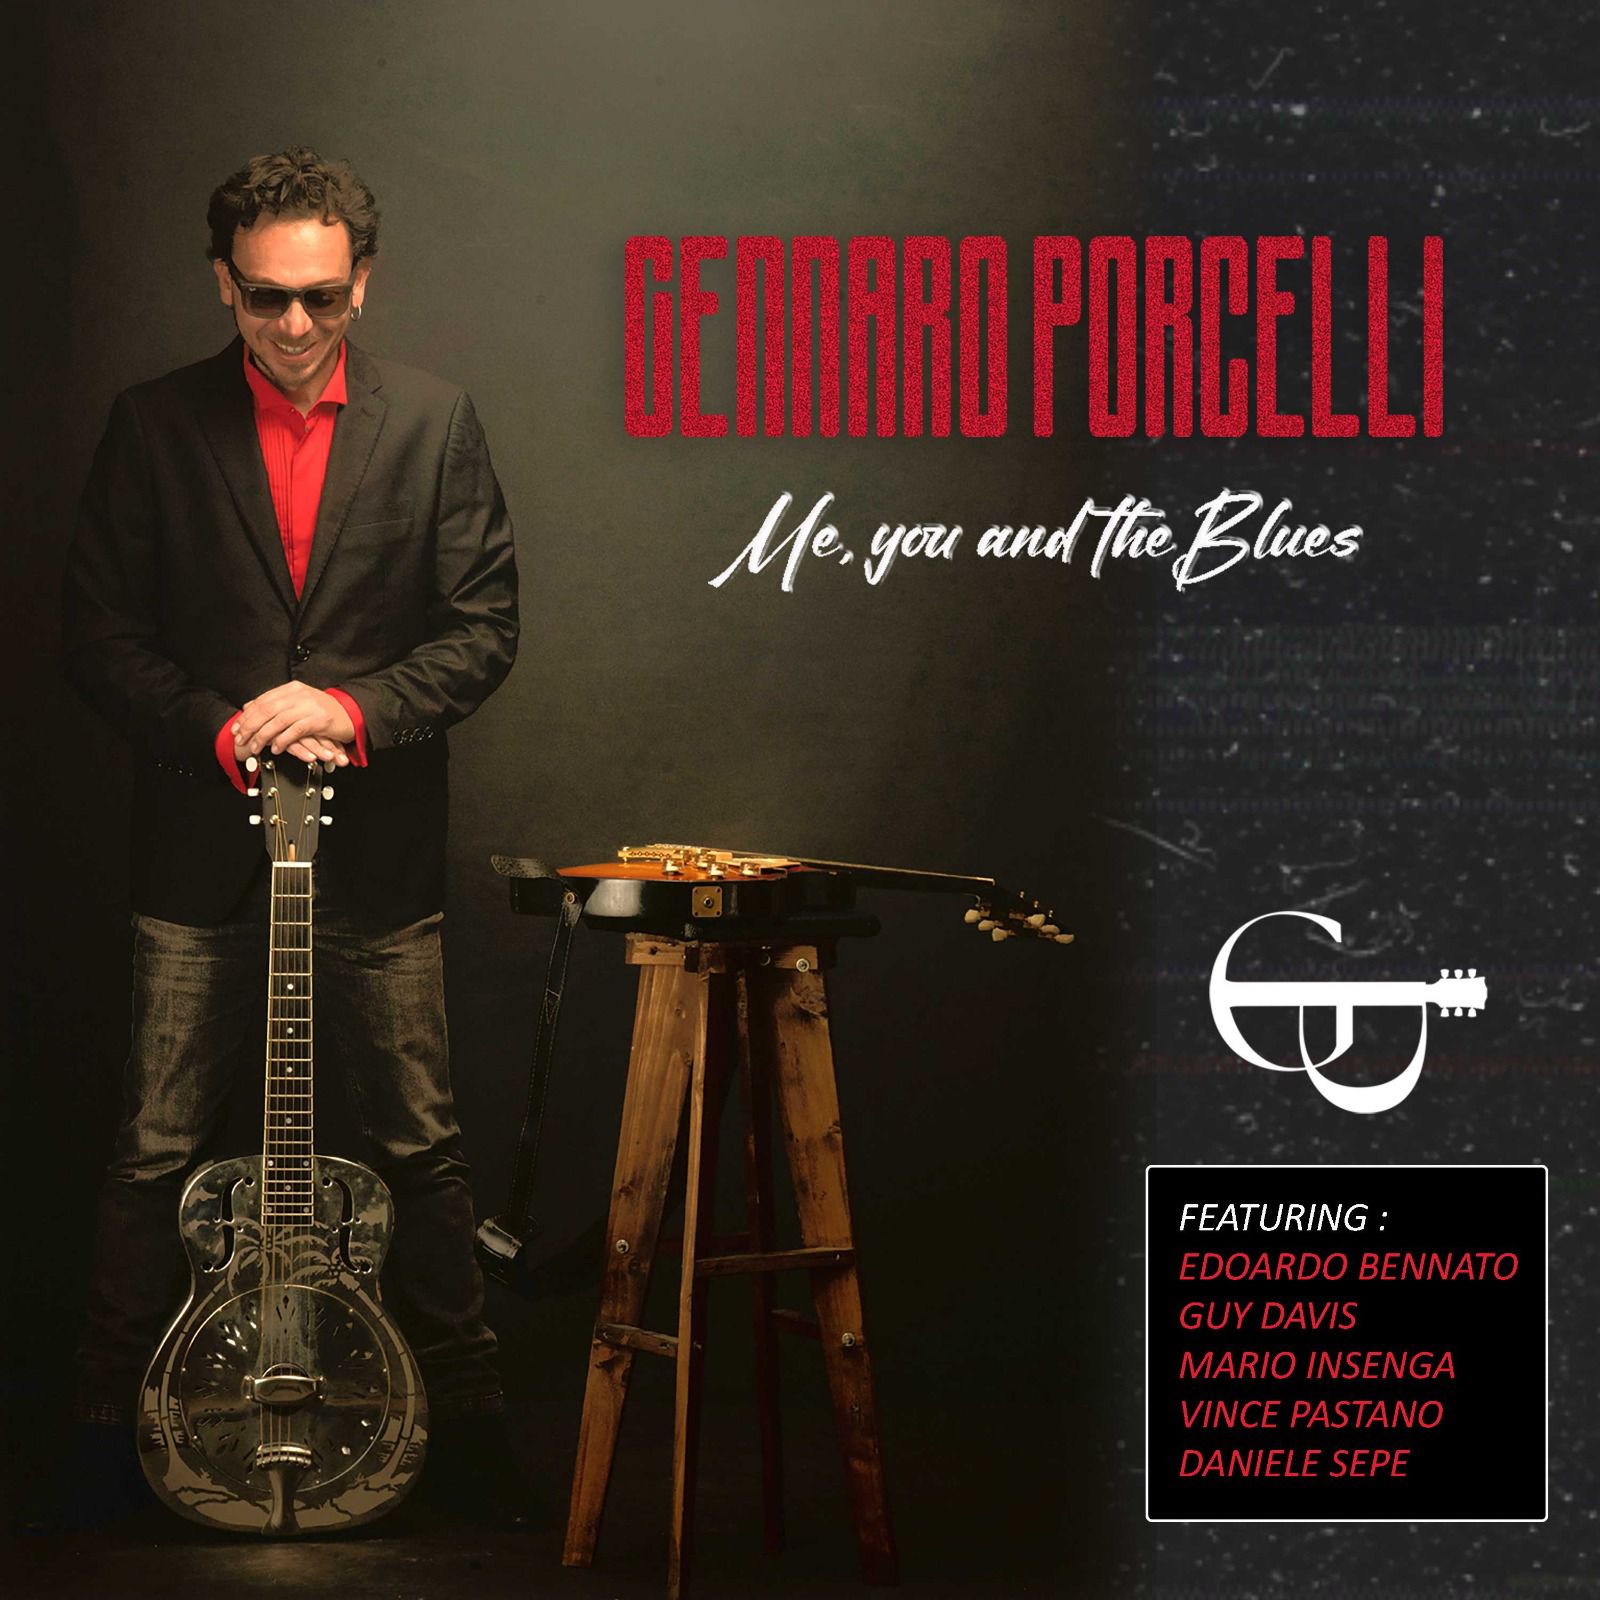 gennaro-porcelli-il-bluesman-made-in-italy